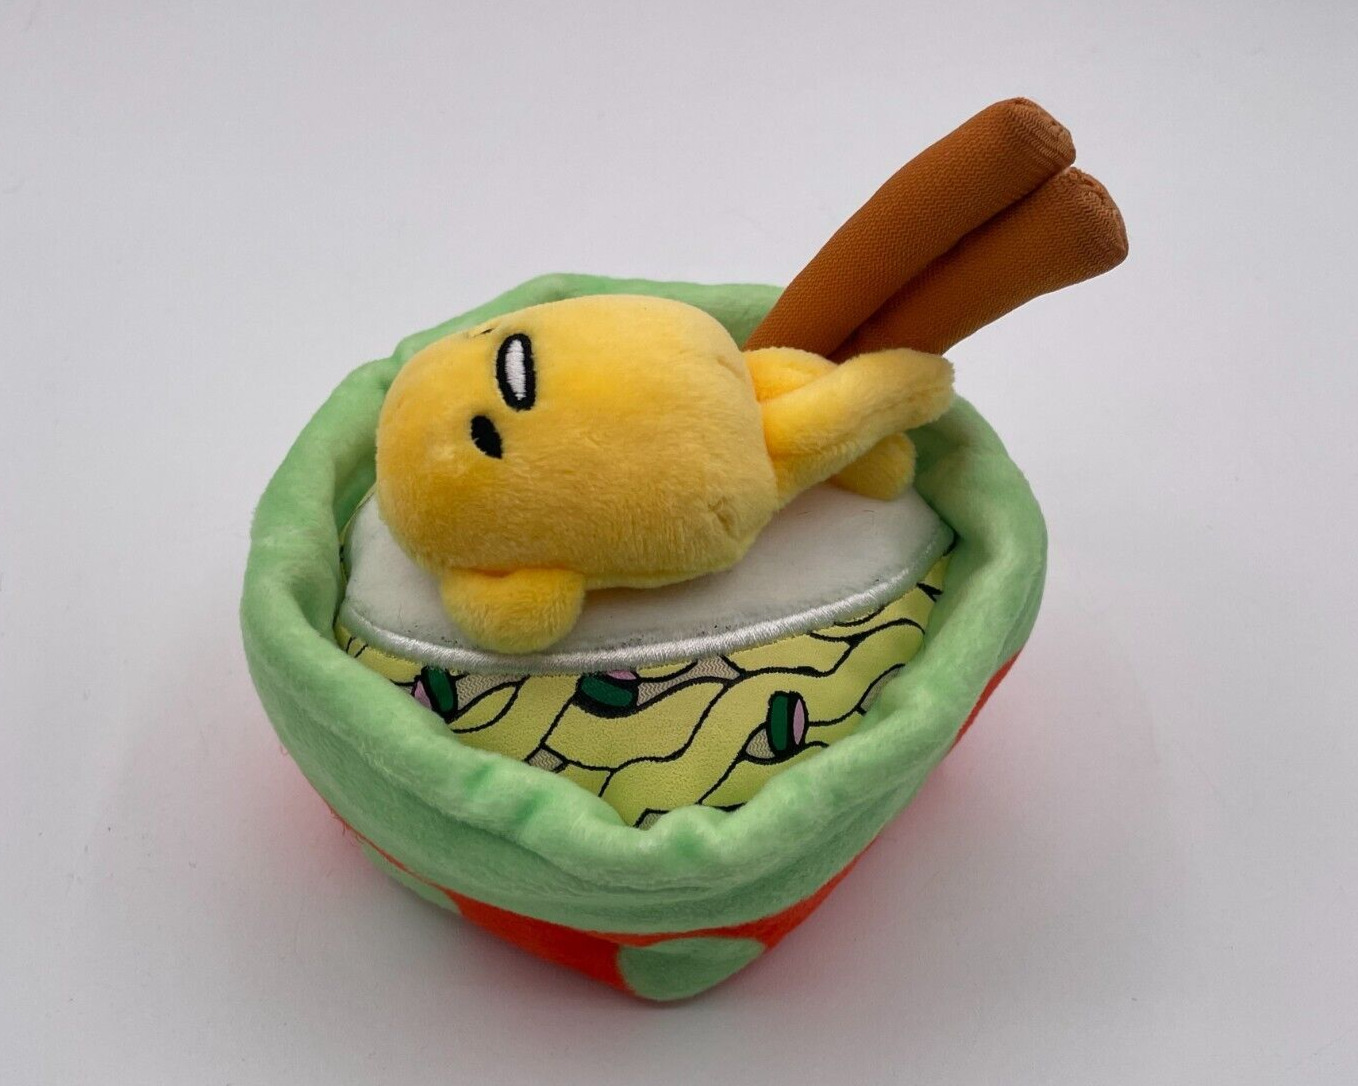 Sanrio Gudetama Lazy Egg Plush 5” Lying in Ramen Noodle Bowl With Chopsticks